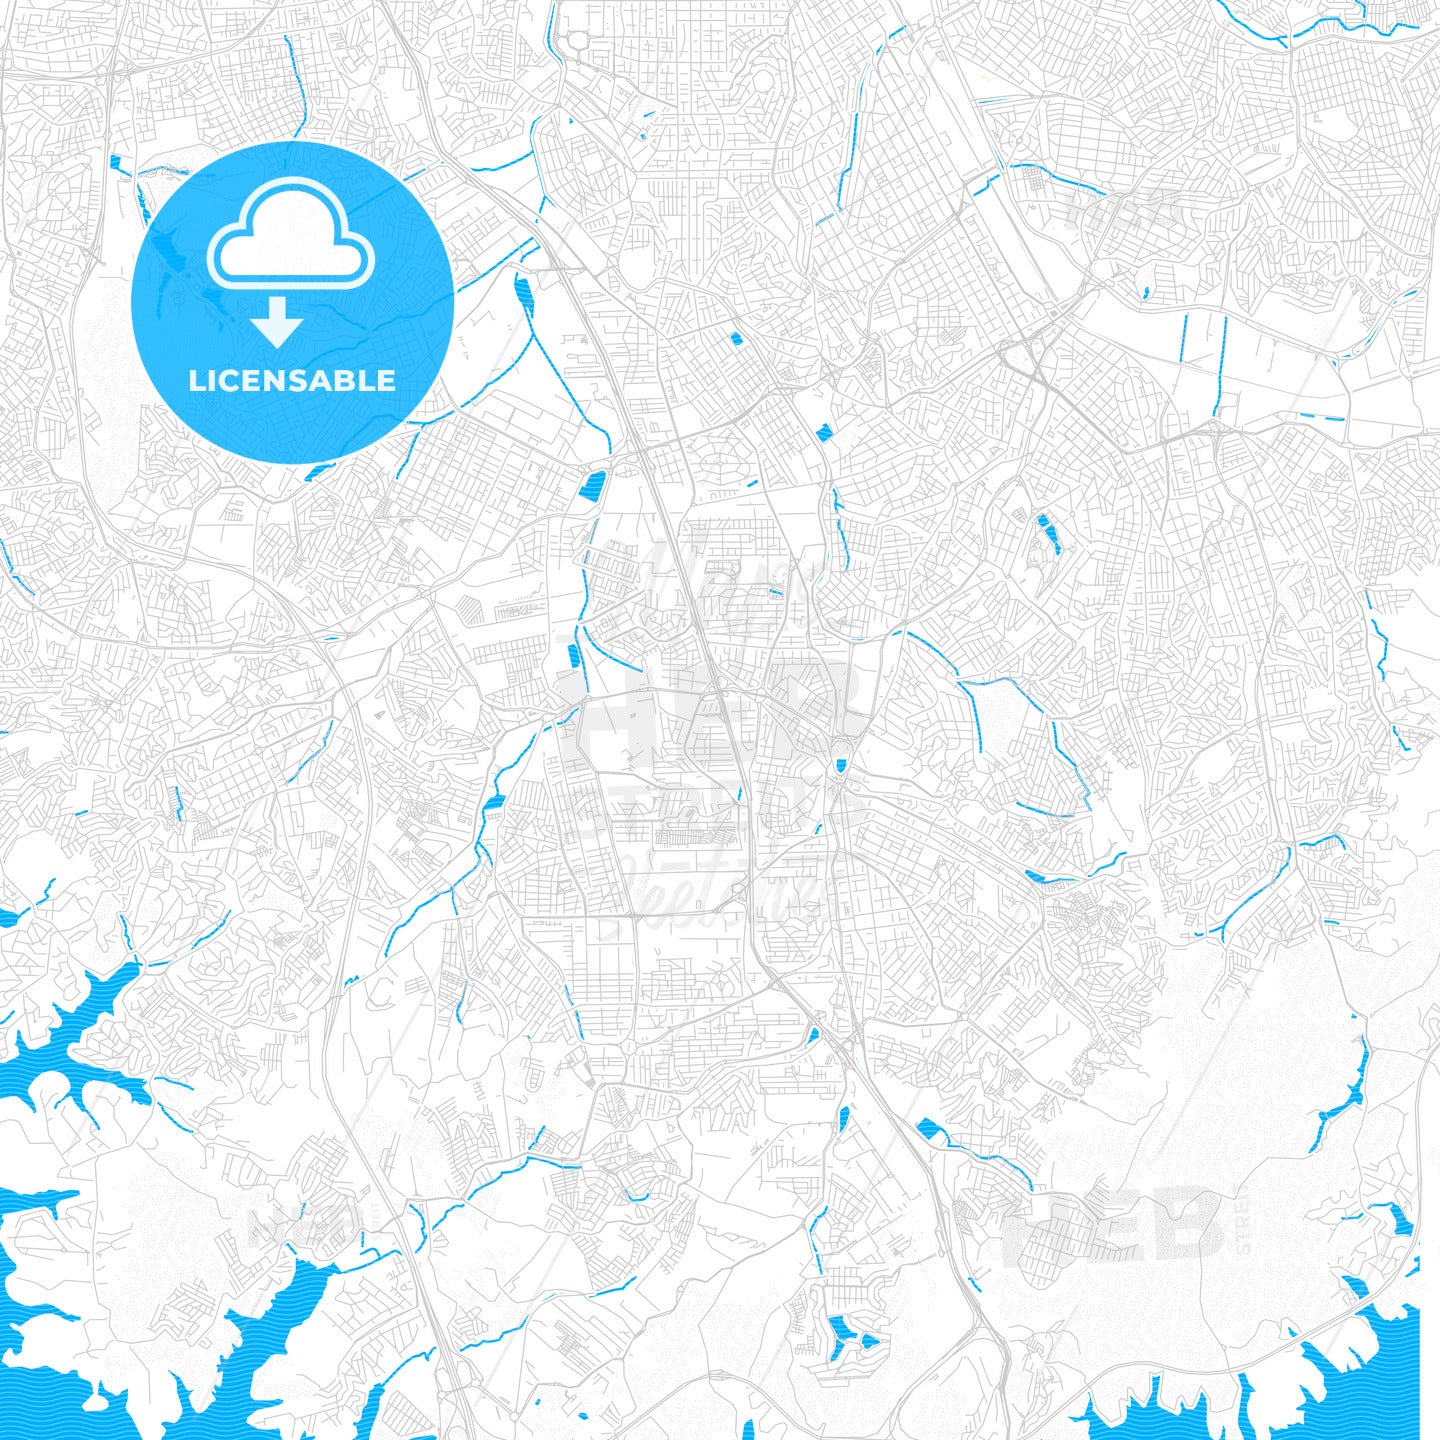 Sao Bernardo do Campo, Brazil PDF vector map with water in focus